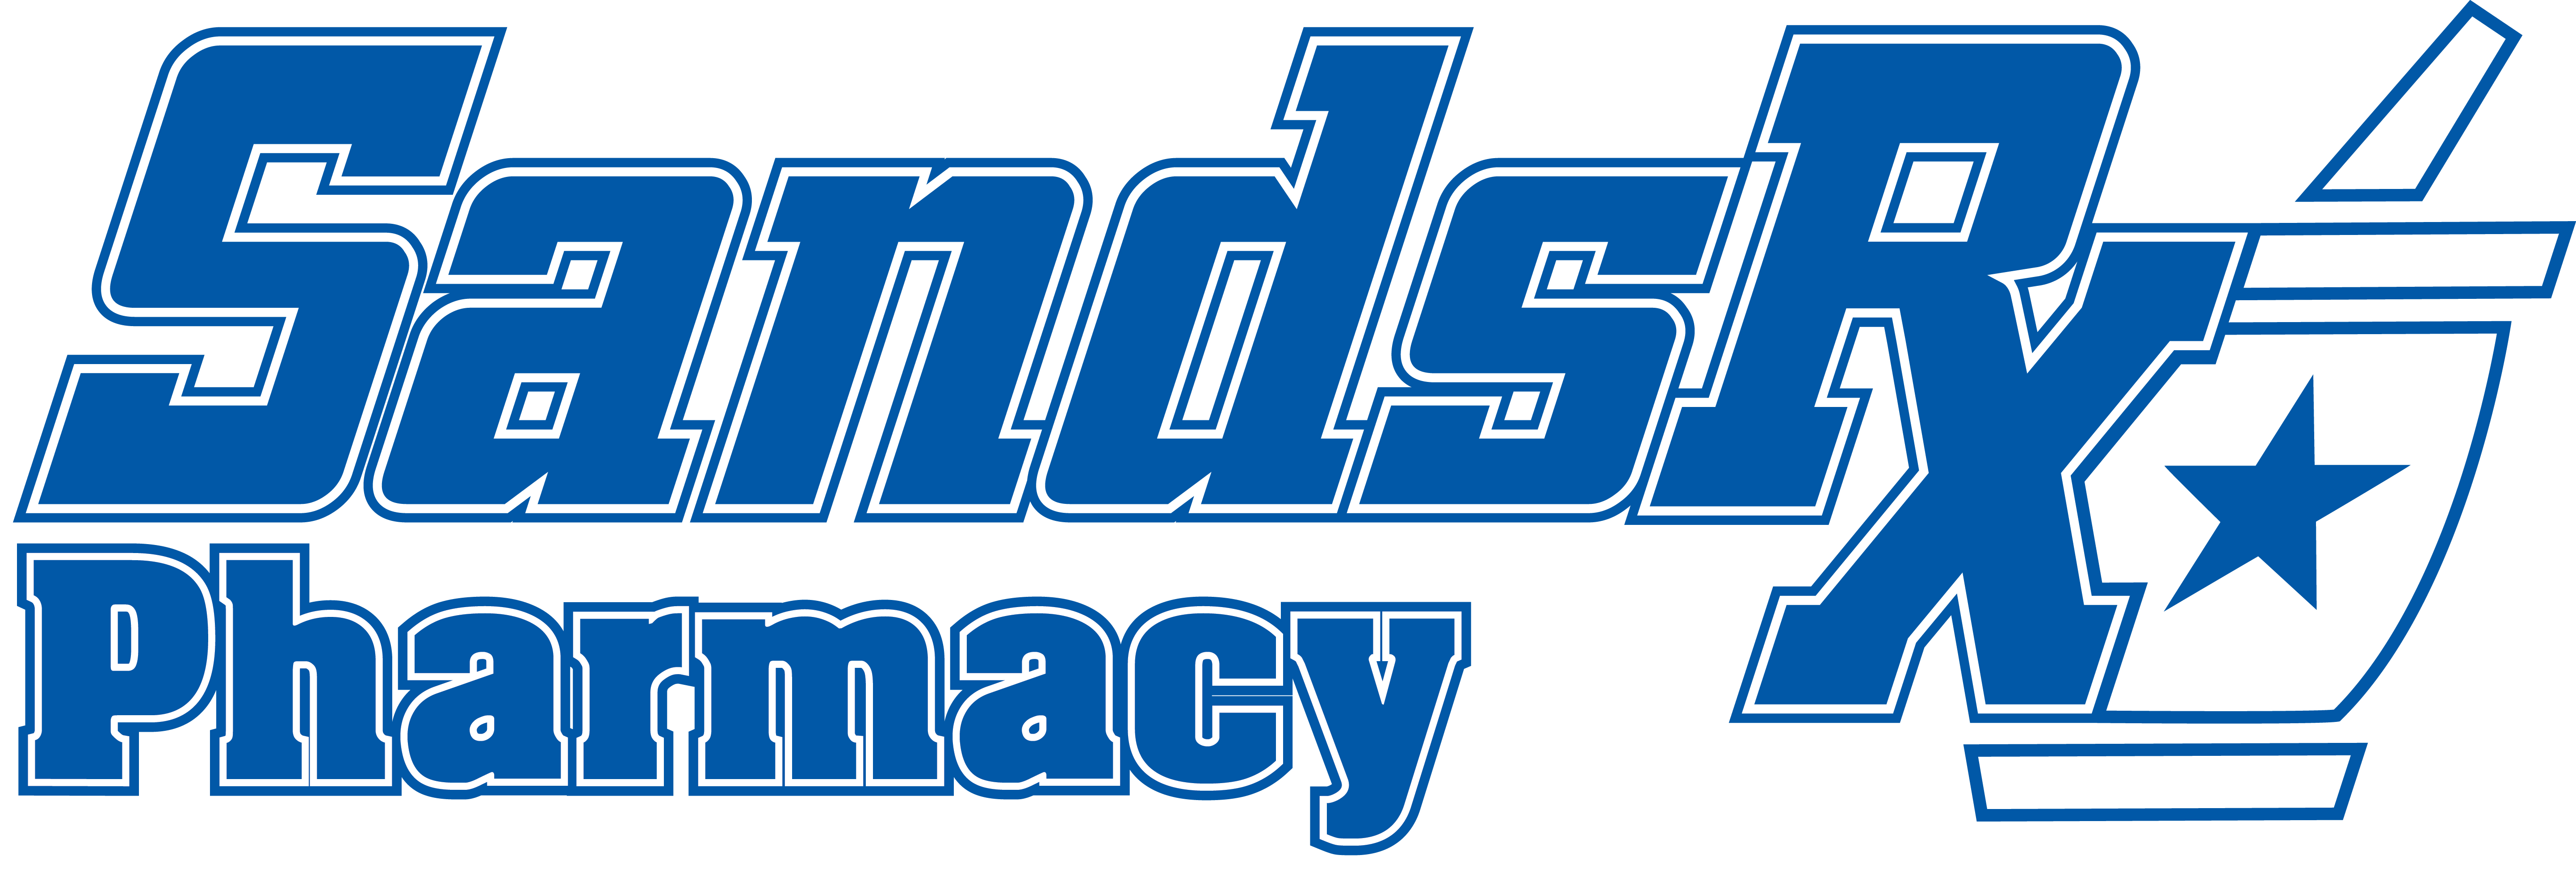 SandsRx Pharmacy Company Logo